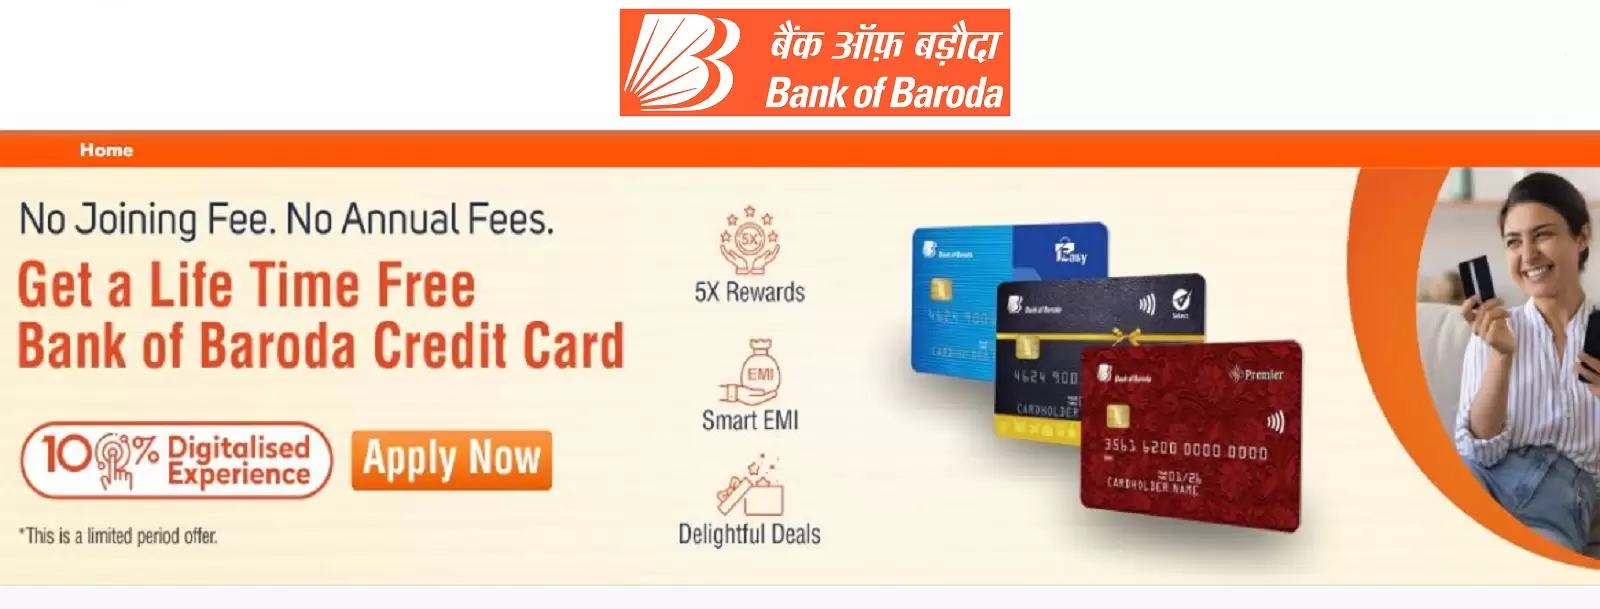 BOB Credit Card Benefits In Hindi